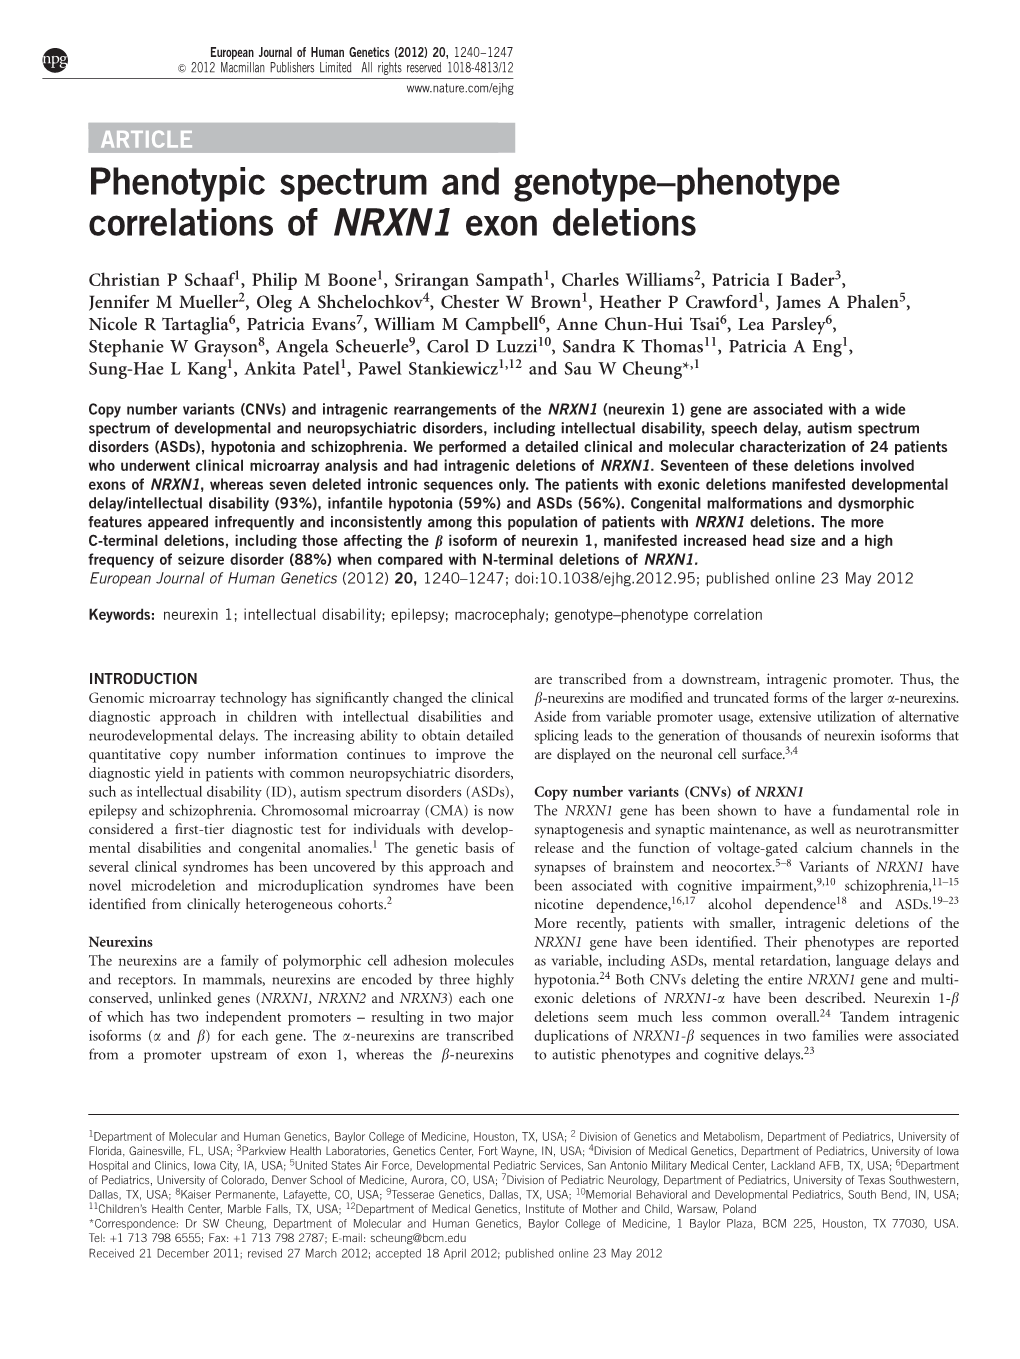 Phenotype Correlations of NRXN1 Exon Deletions